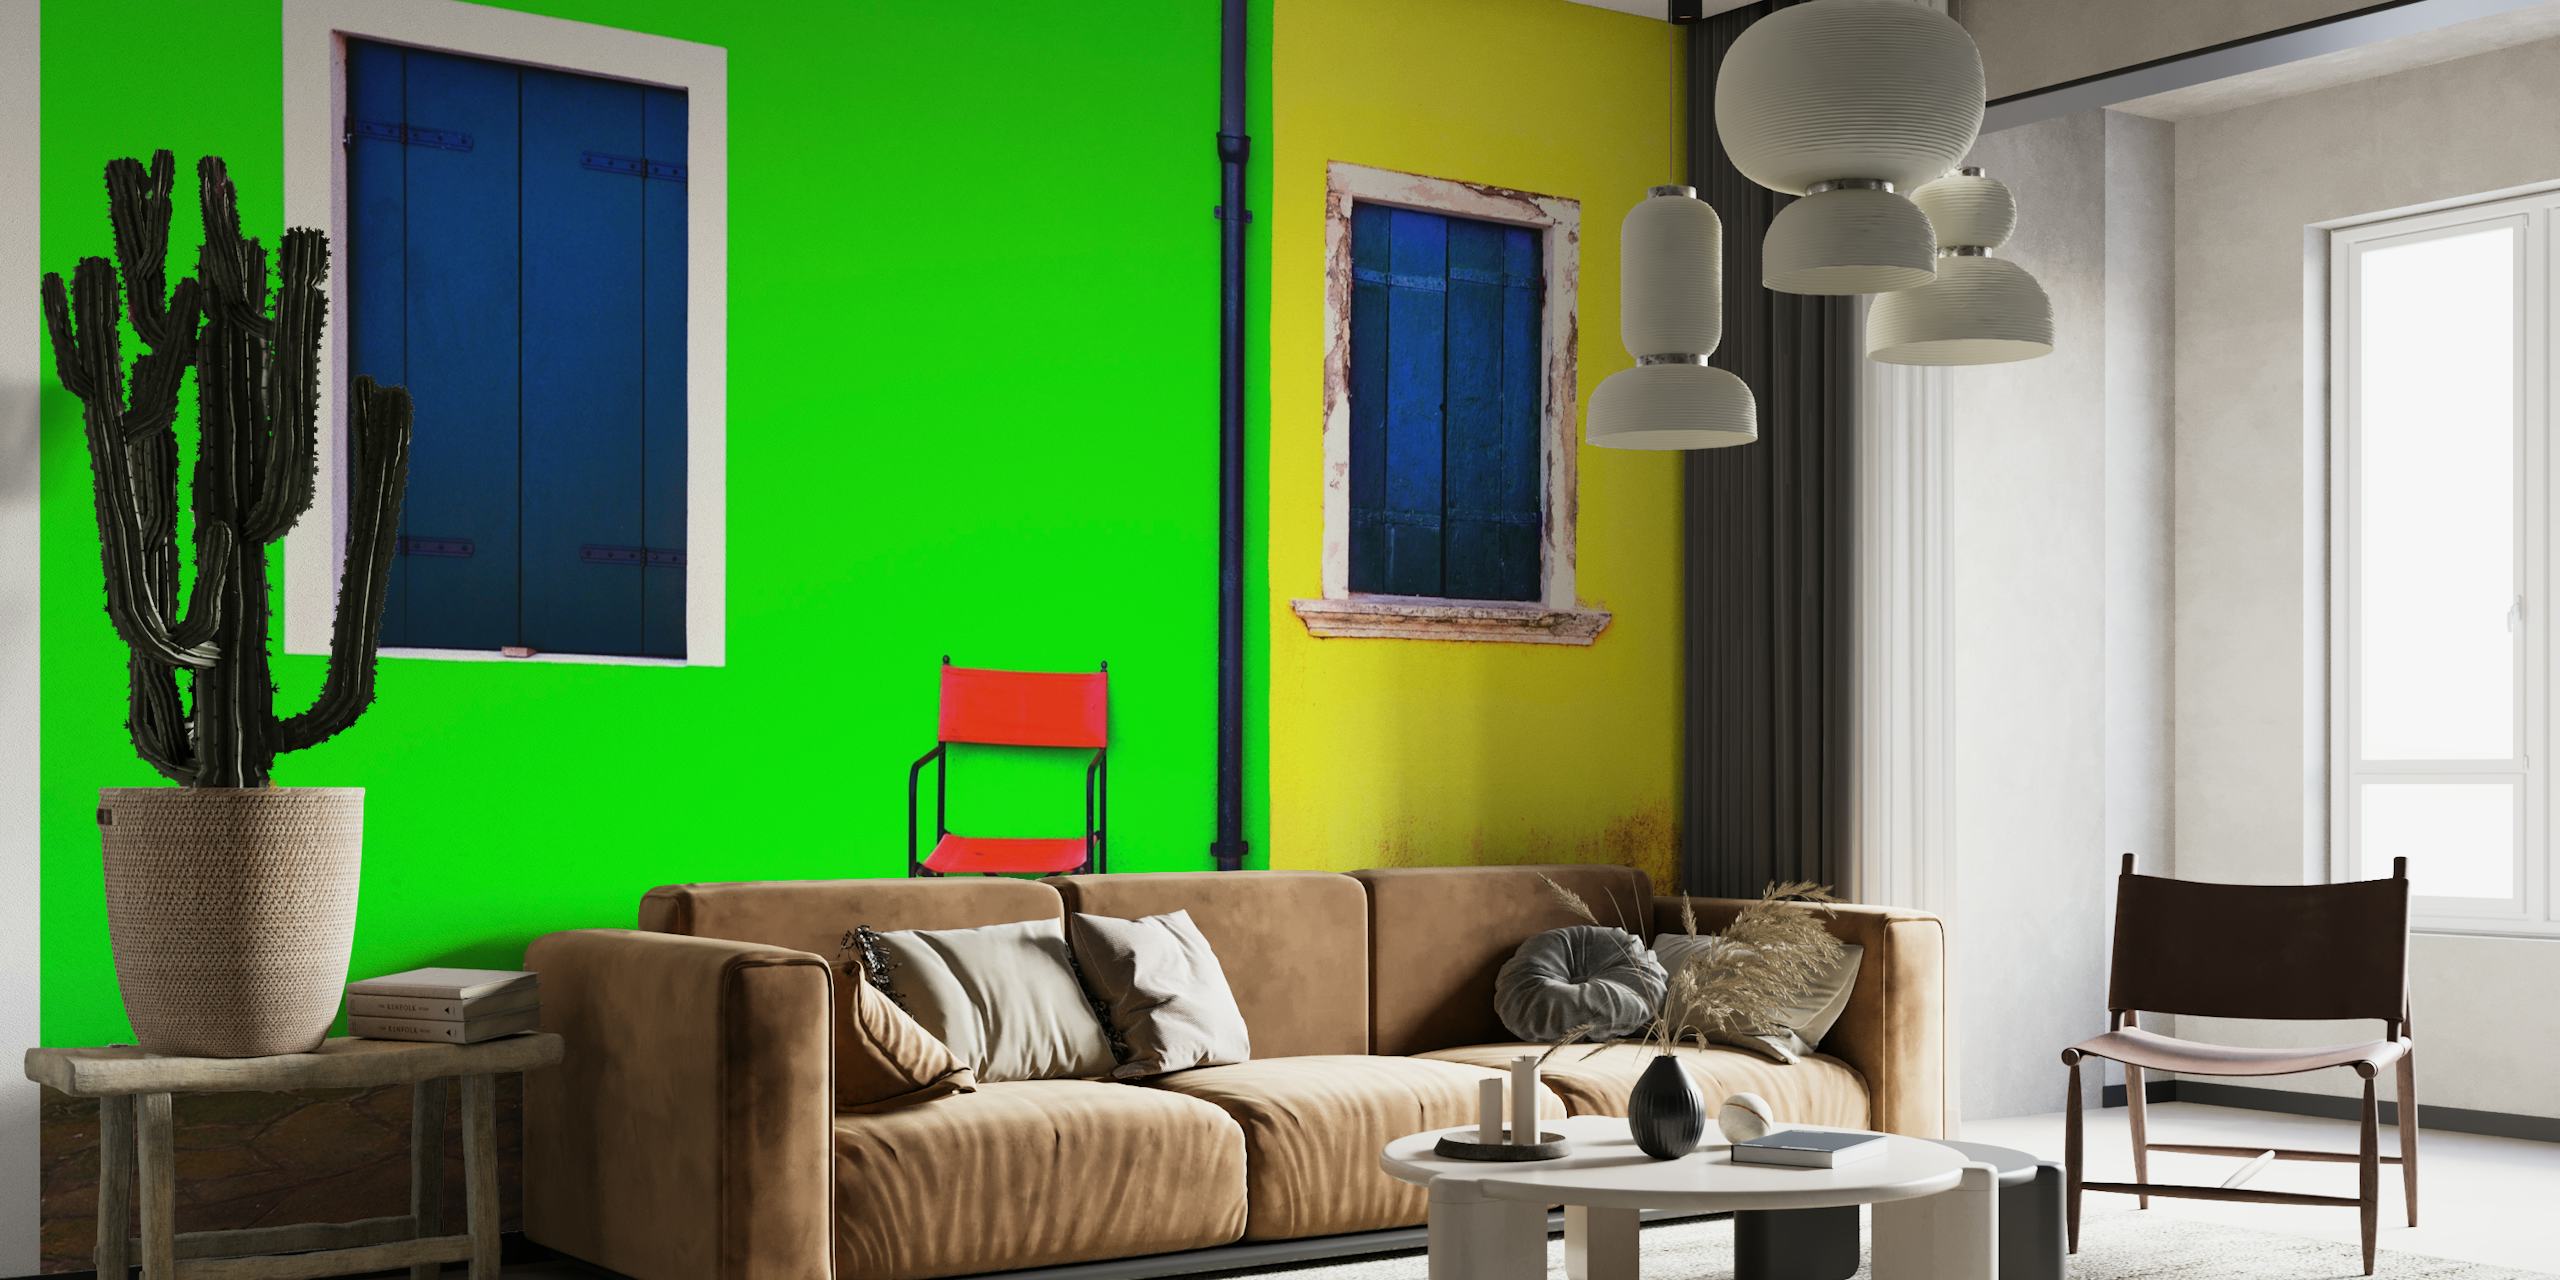 Gedurfde en minimalistische muurschildering met een groene muur met een blauw raam, een gele muur met een blauw raam en een rode stoel